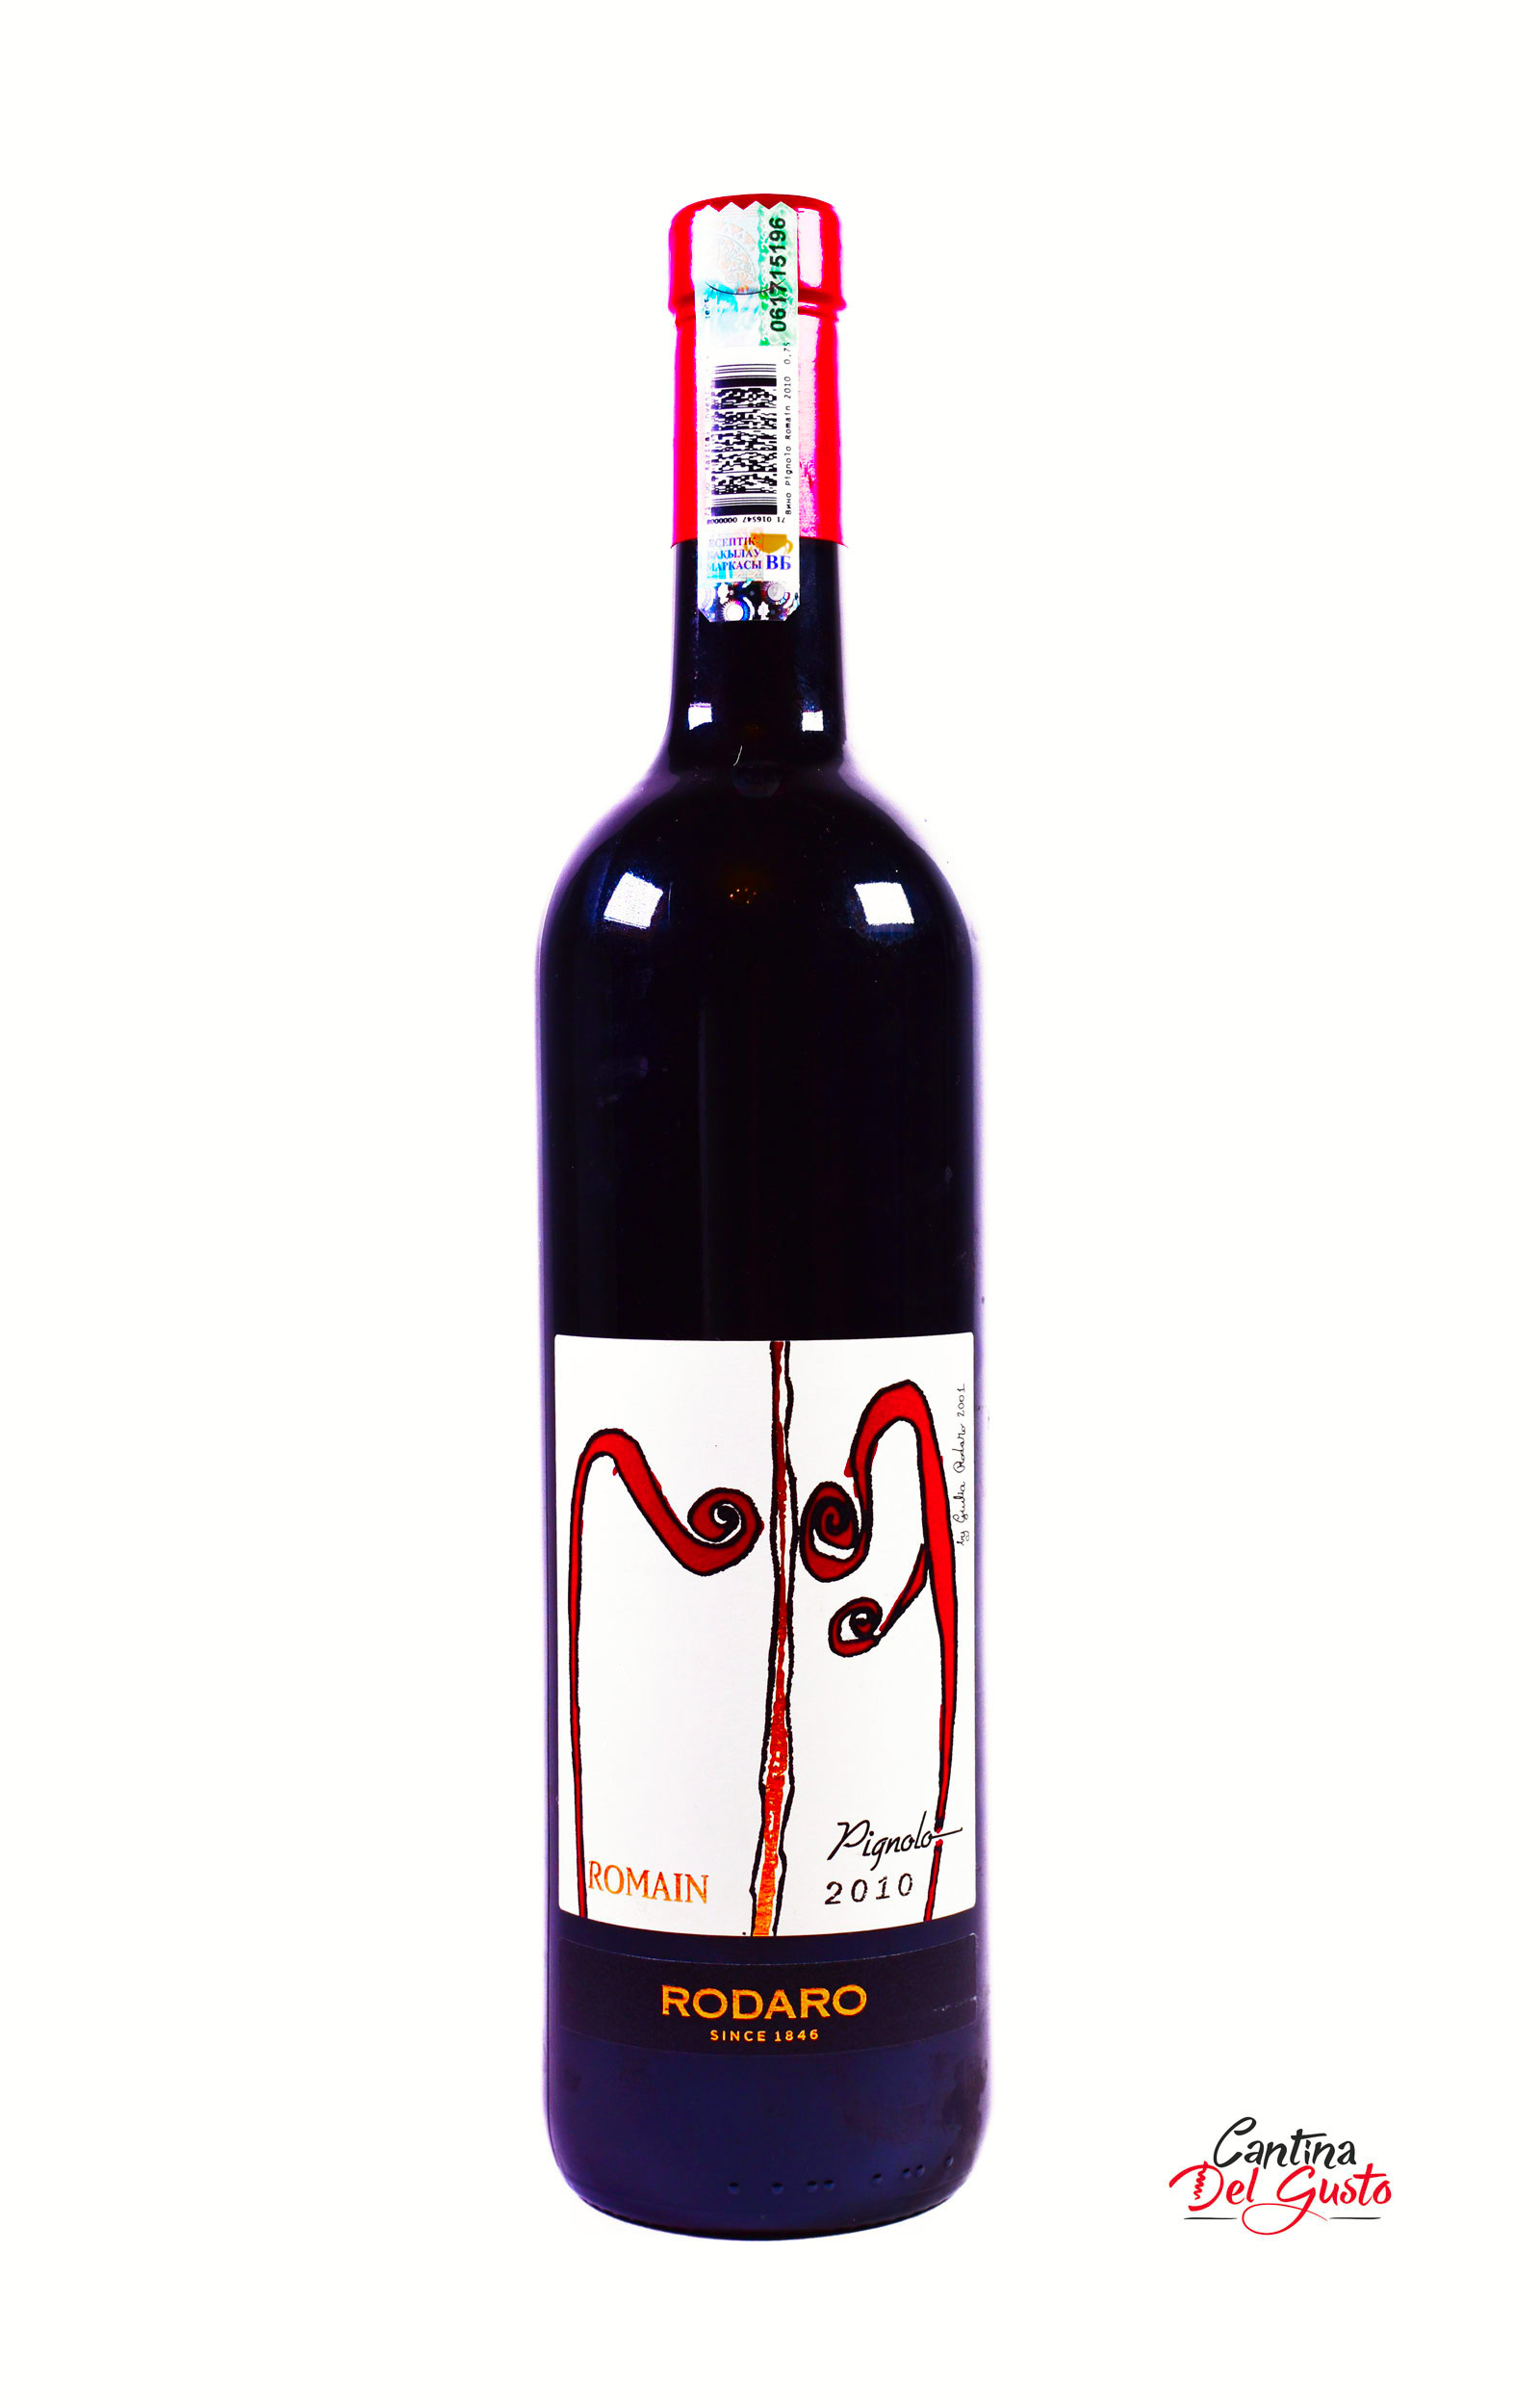 Родаро Красное сухое вино Pignolo Romain Rodaro, DOP, 100% Pignolo, 2010, 15,5%, 0,750